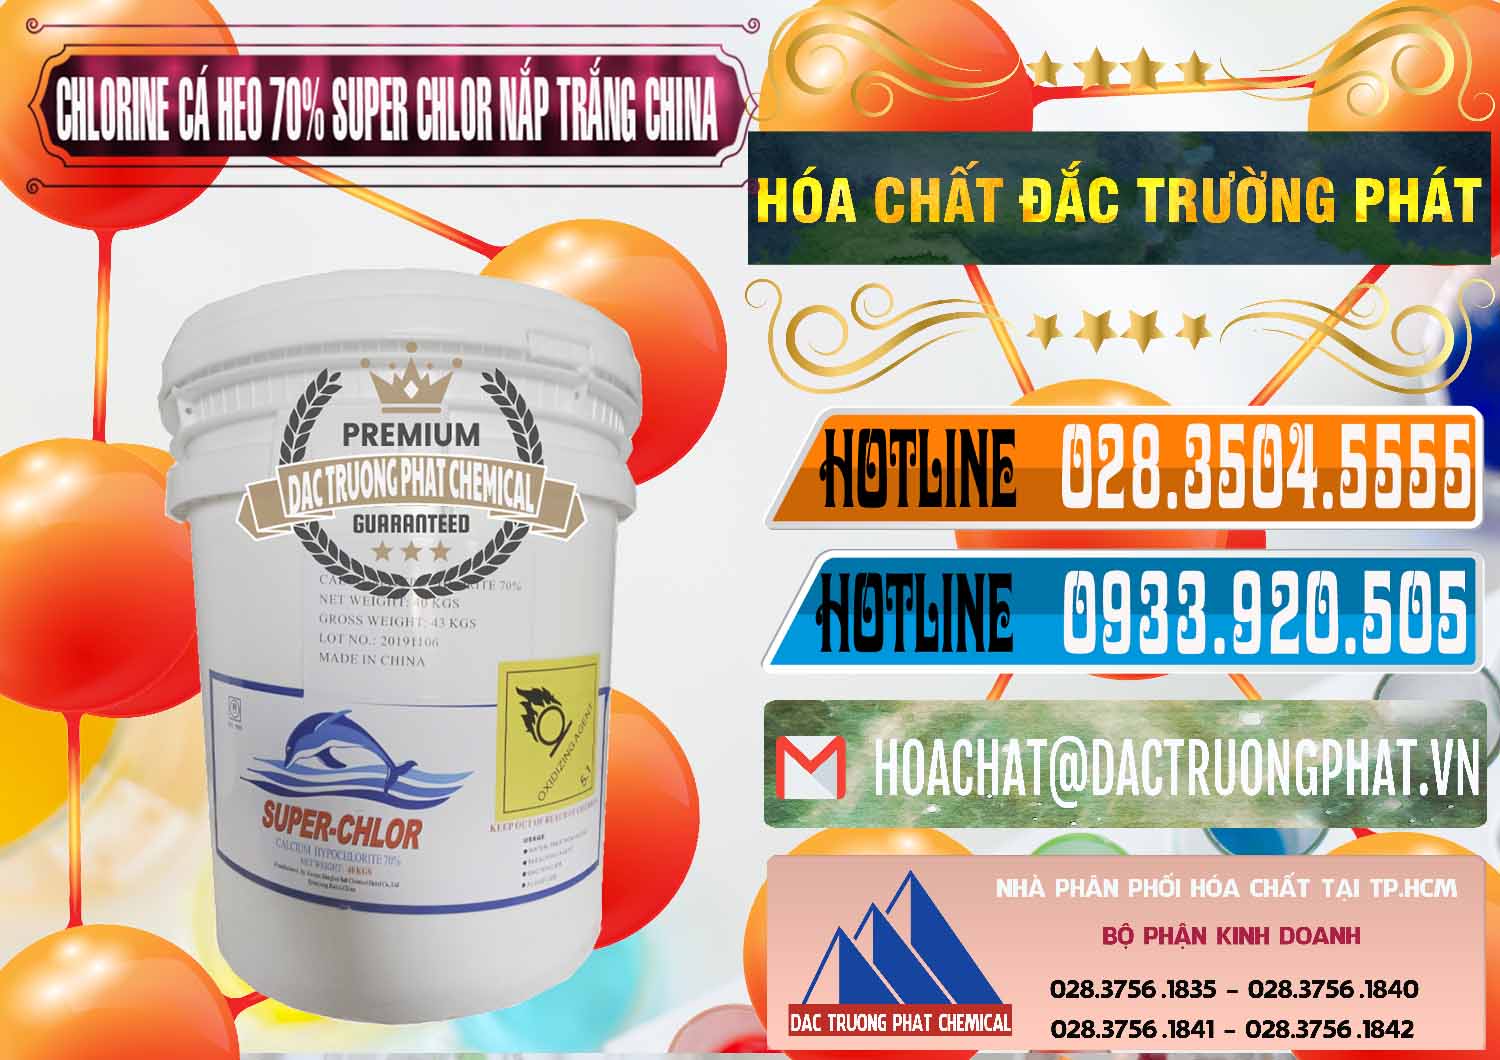 Công ty chuyên phân phối và bán Clorin - Chlorine Cá Heo 70% Super Chlor Nắp Trắng Trung Quốc China - 0240 - Chuyên cung ứng và phân phối hóa chất tại TP.HCM - stmp.net